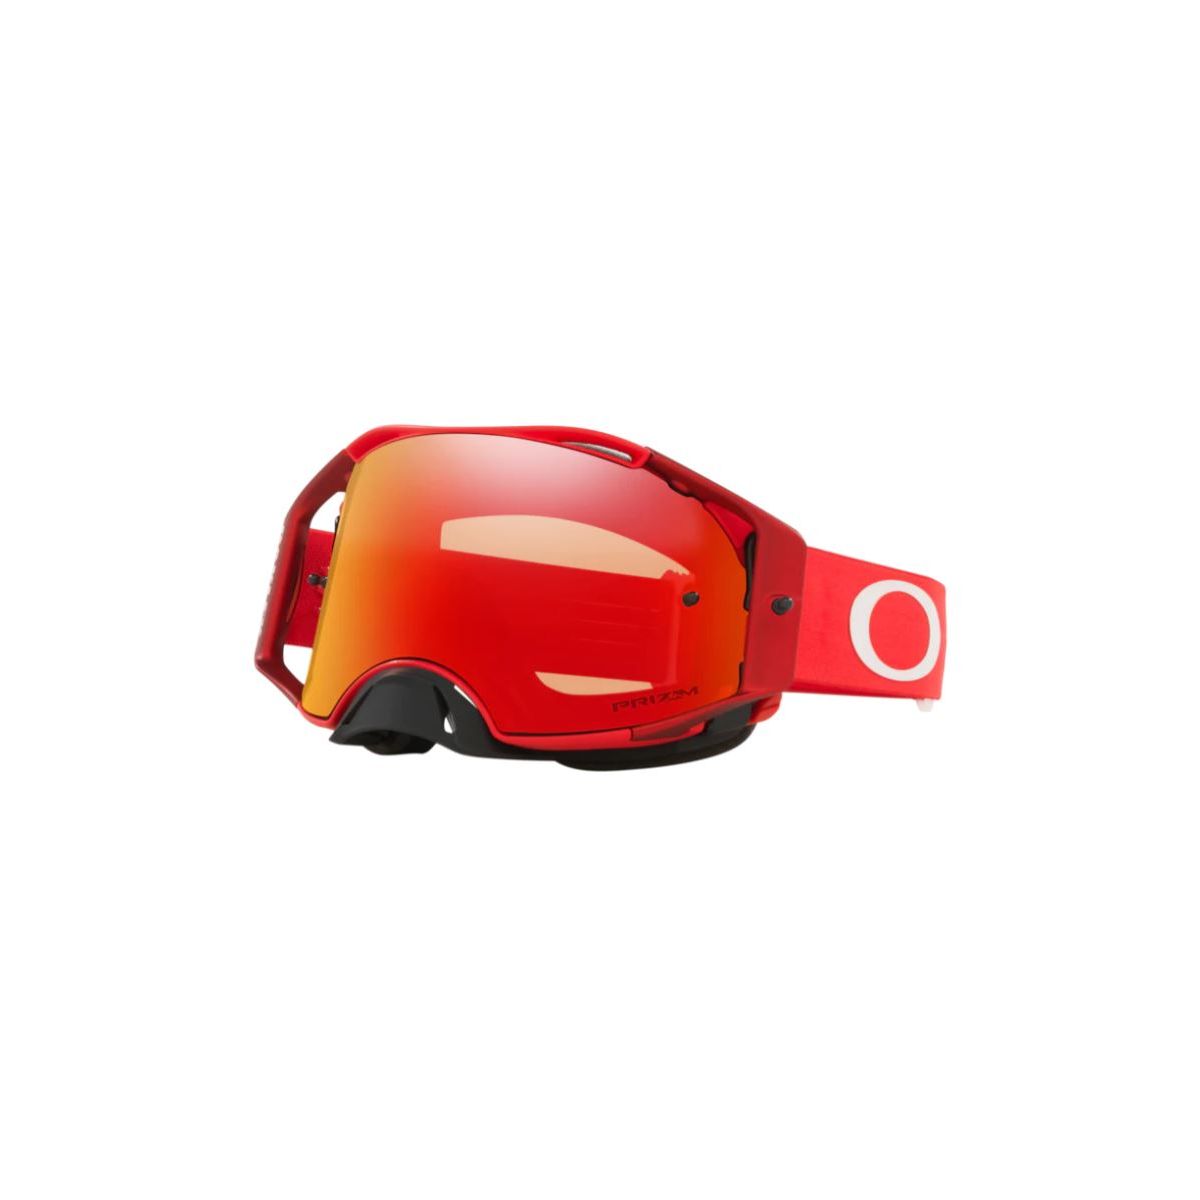 Máscara OAKLEY AIRBRAKE MX Moto Red Prizm Torch en color rojo para bicicleta de descenso, motocross o enduro